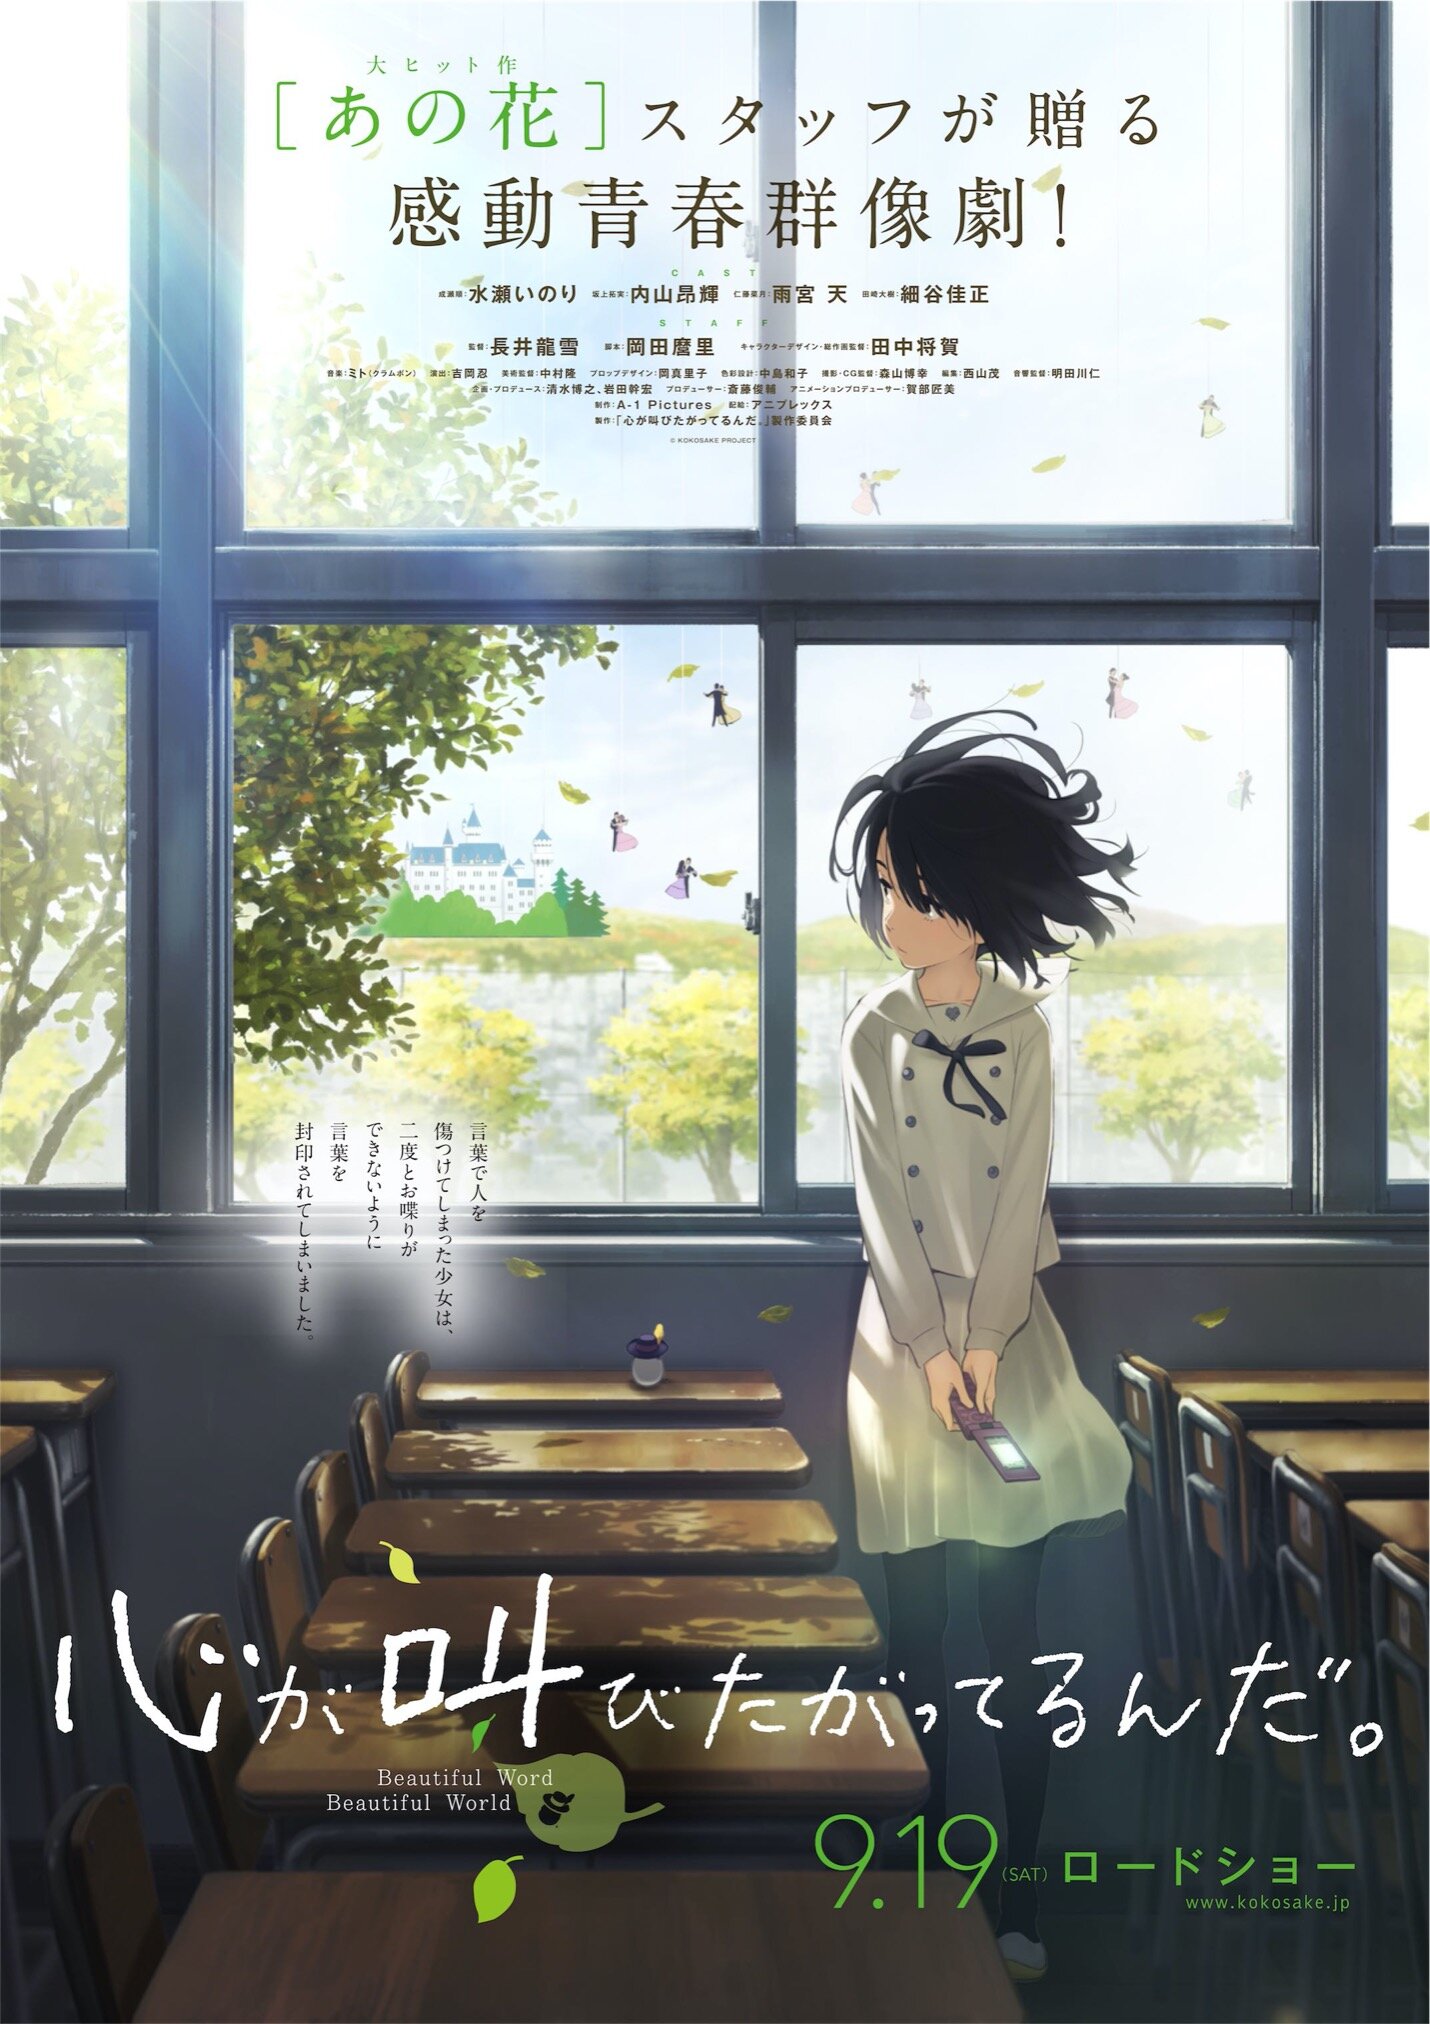 Miss Hokusai (2015) - IMDb